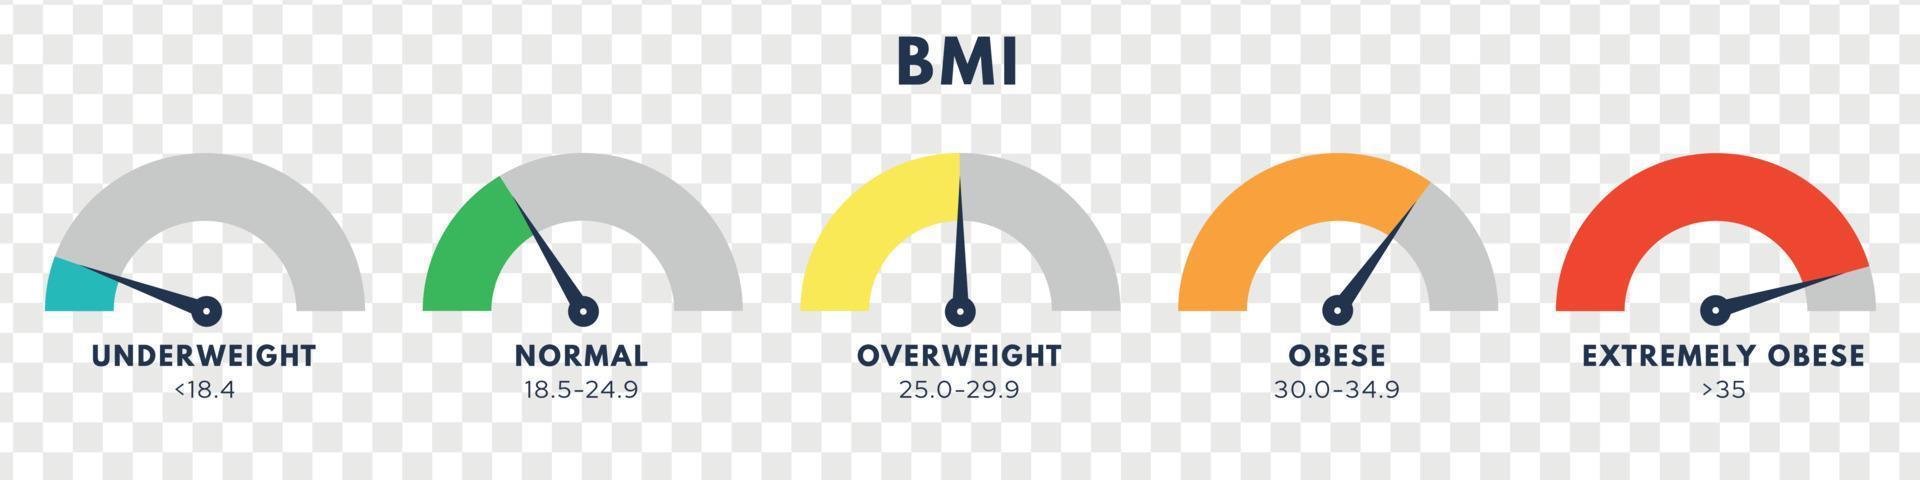 Body-Mass-Index oder Mass-Index-Skala. arten von bmi.weight loss konzept. vektor isolierte illustration